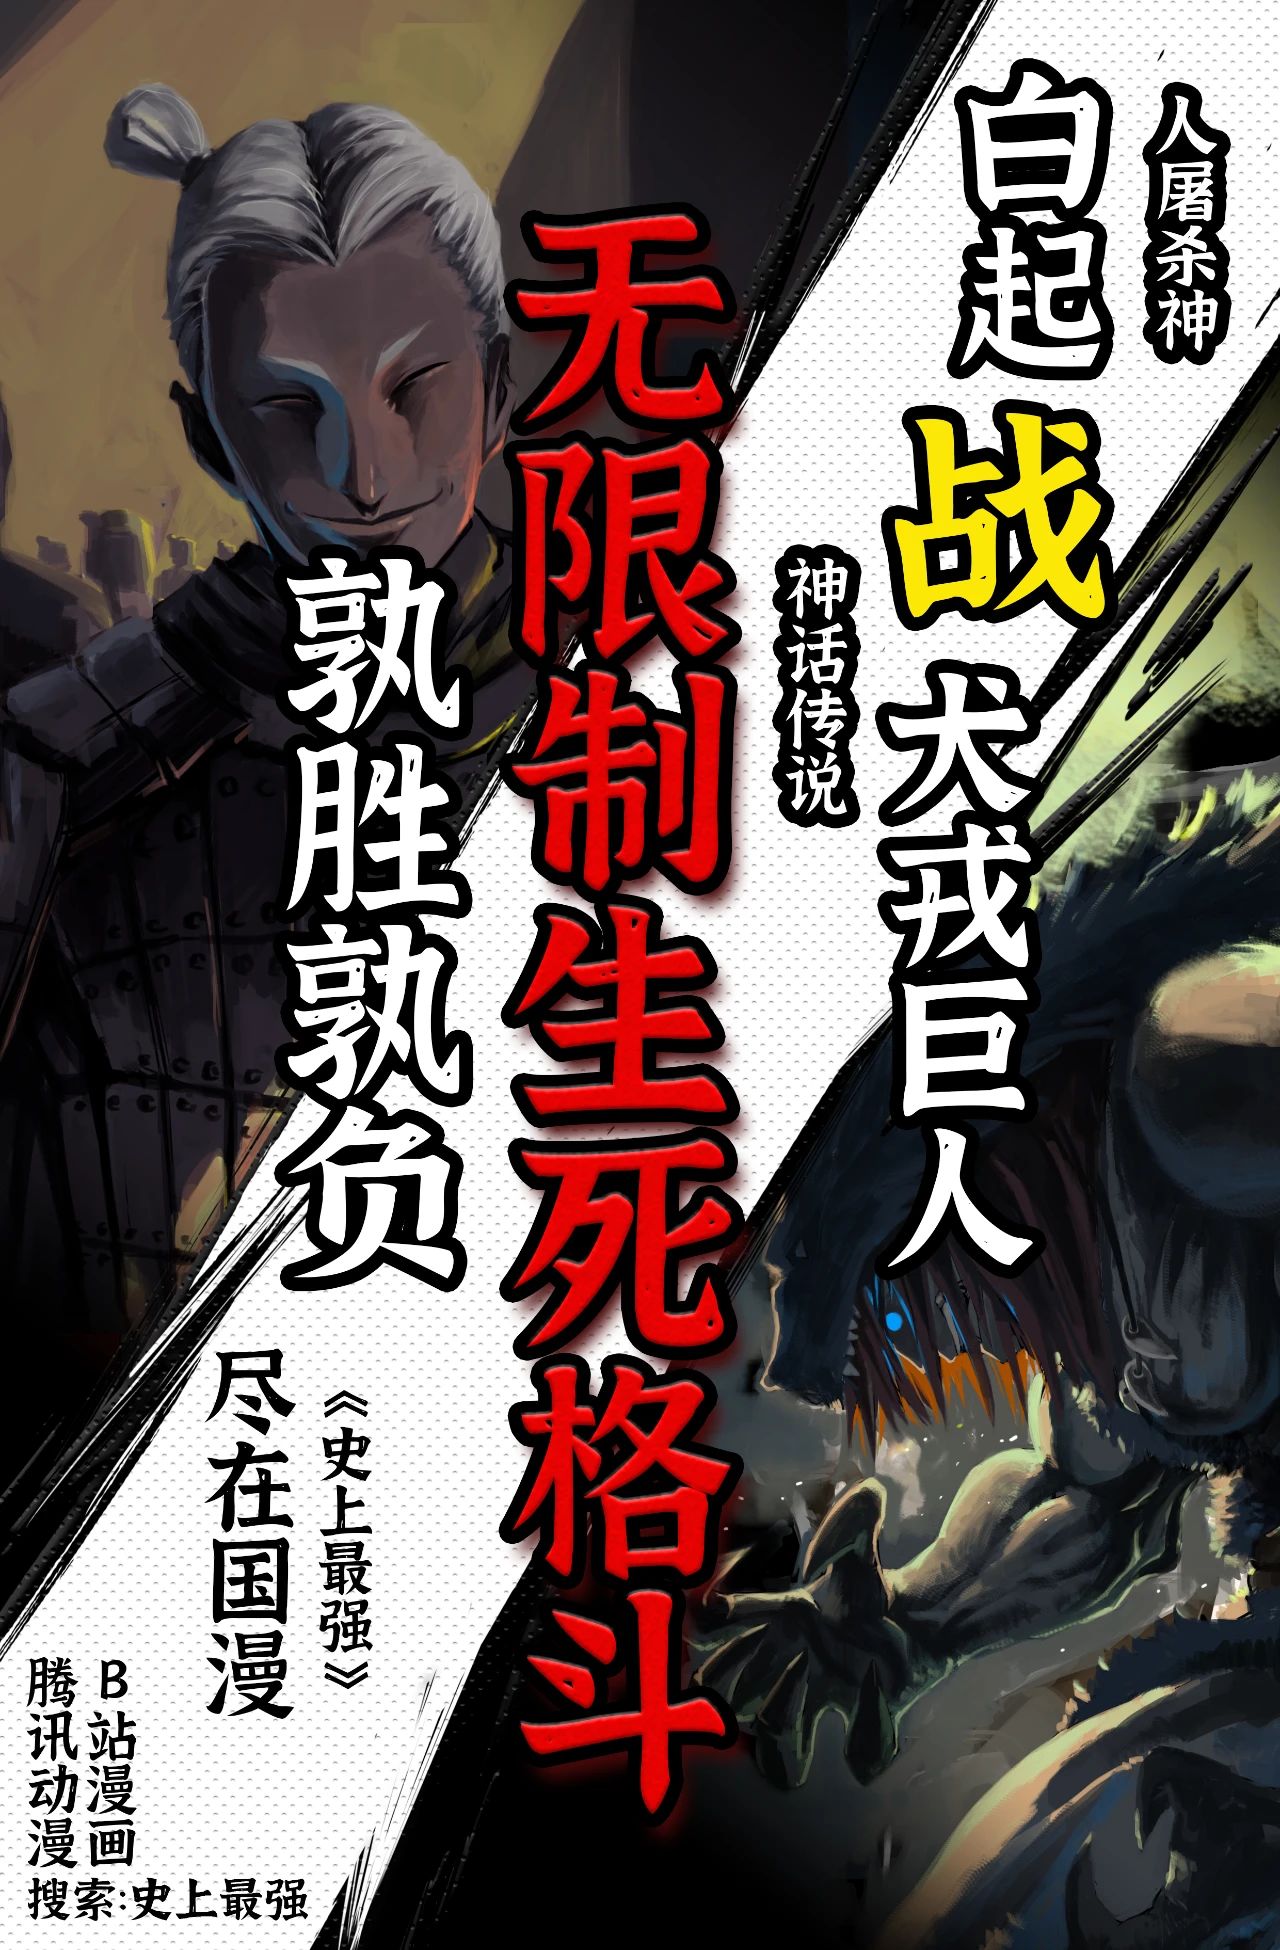 《终末的女武神第二季》在线免费观看(免费共享)【mkv-HD1280p】已完结